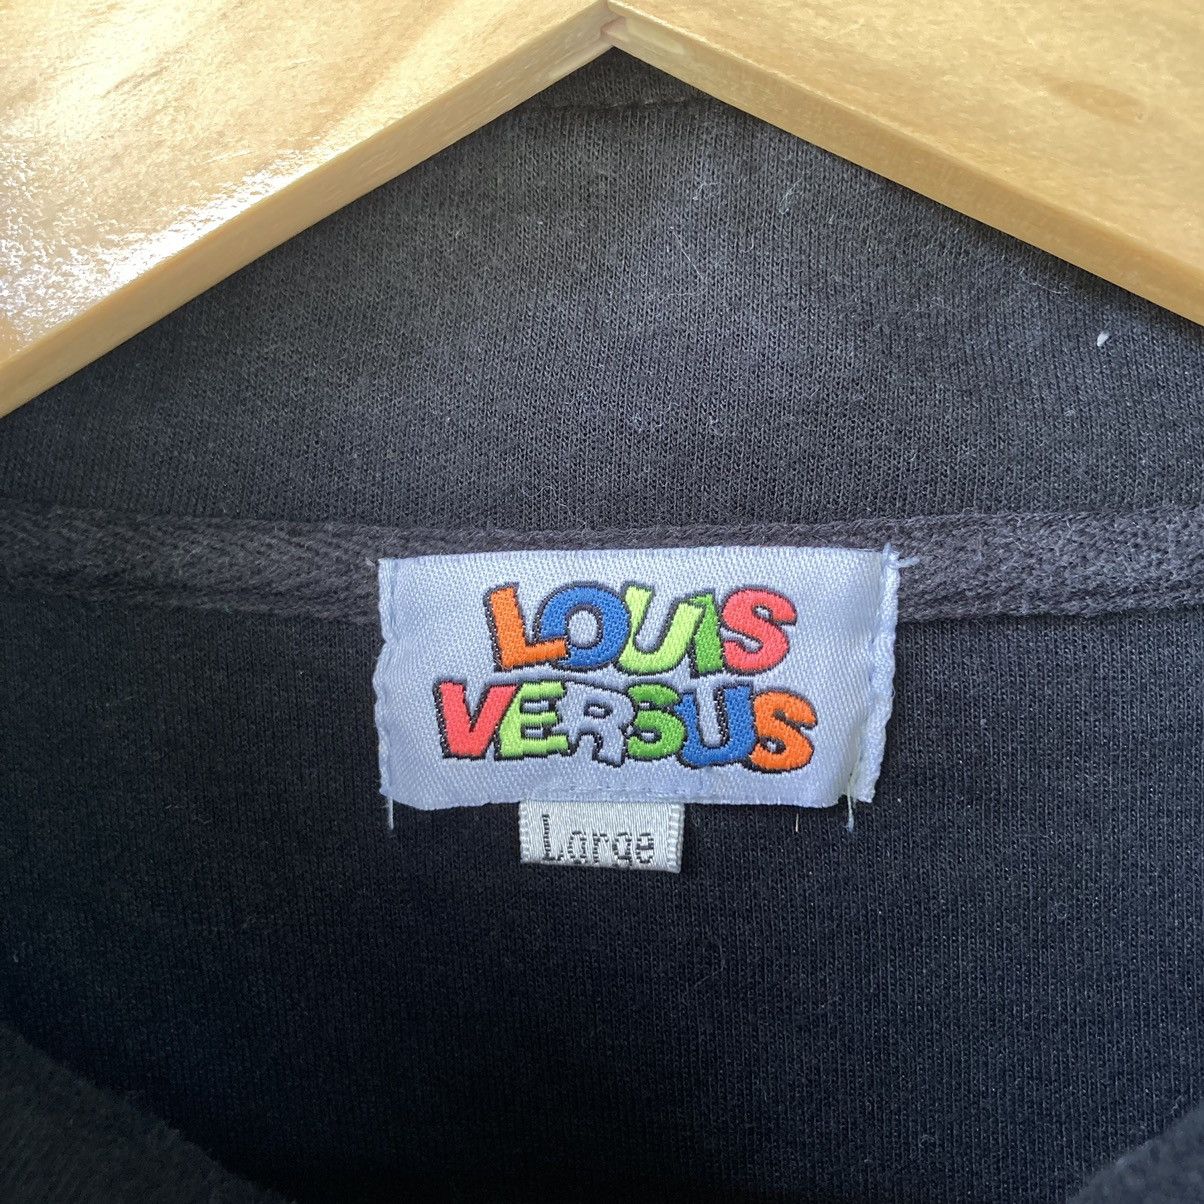 Vintage Louis Versus Black Sweatshirt - 7